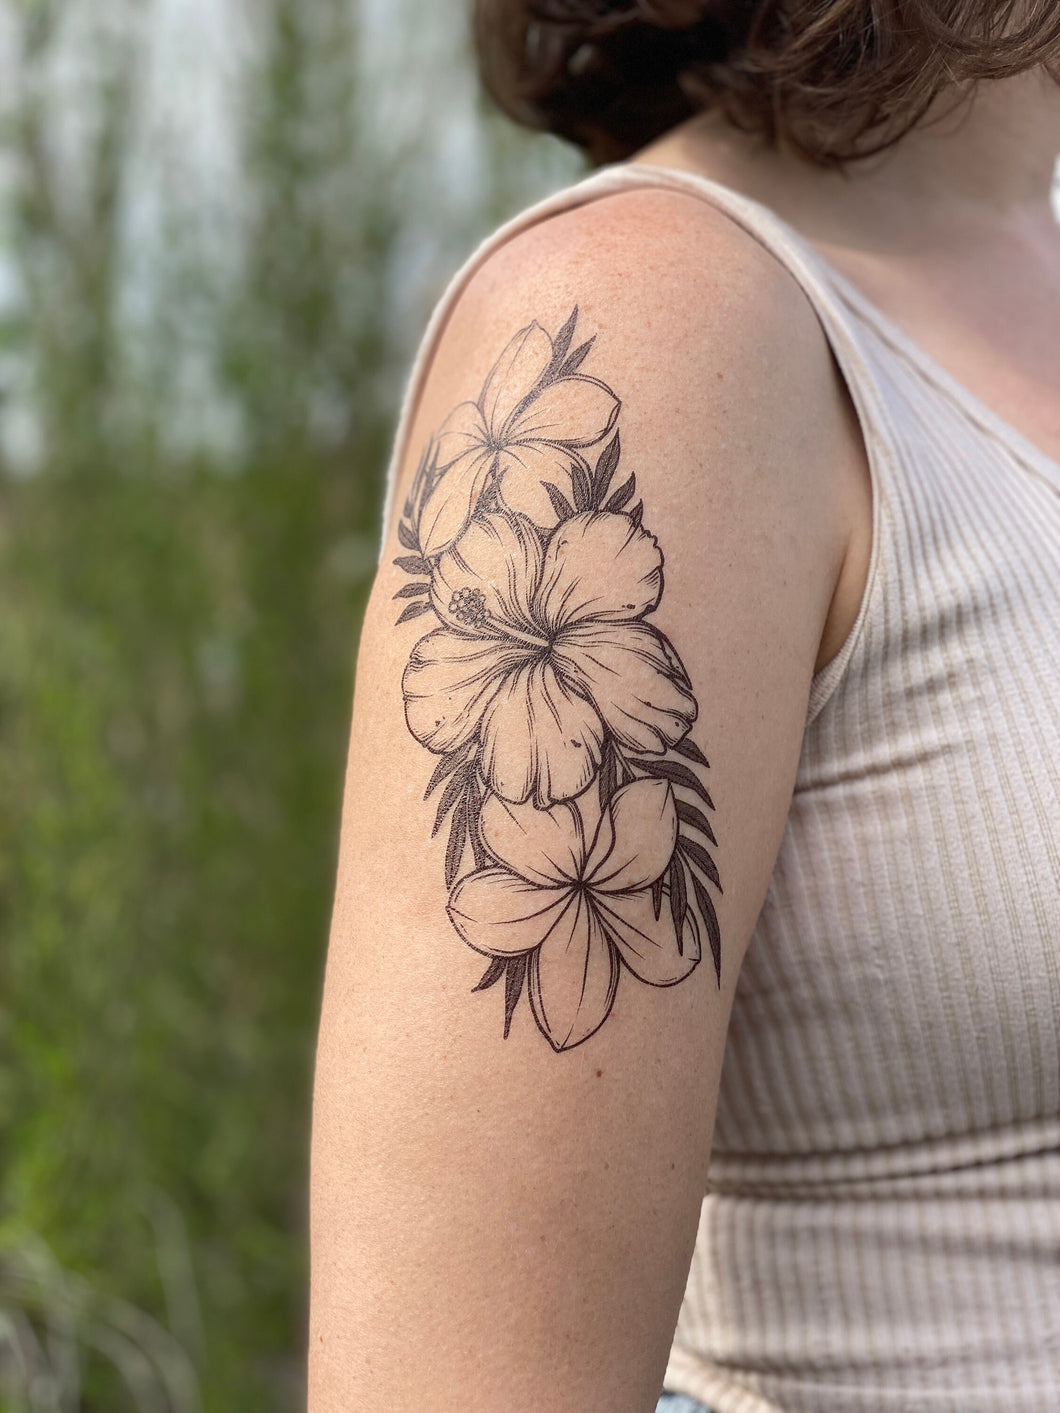 Flower specialist @davescraft #tattoo #tattoos #tattooawards #tattooed  #tattooartist #girlswithtattoos #tattooart #tattoolife #tattooedgi... |  Instagram